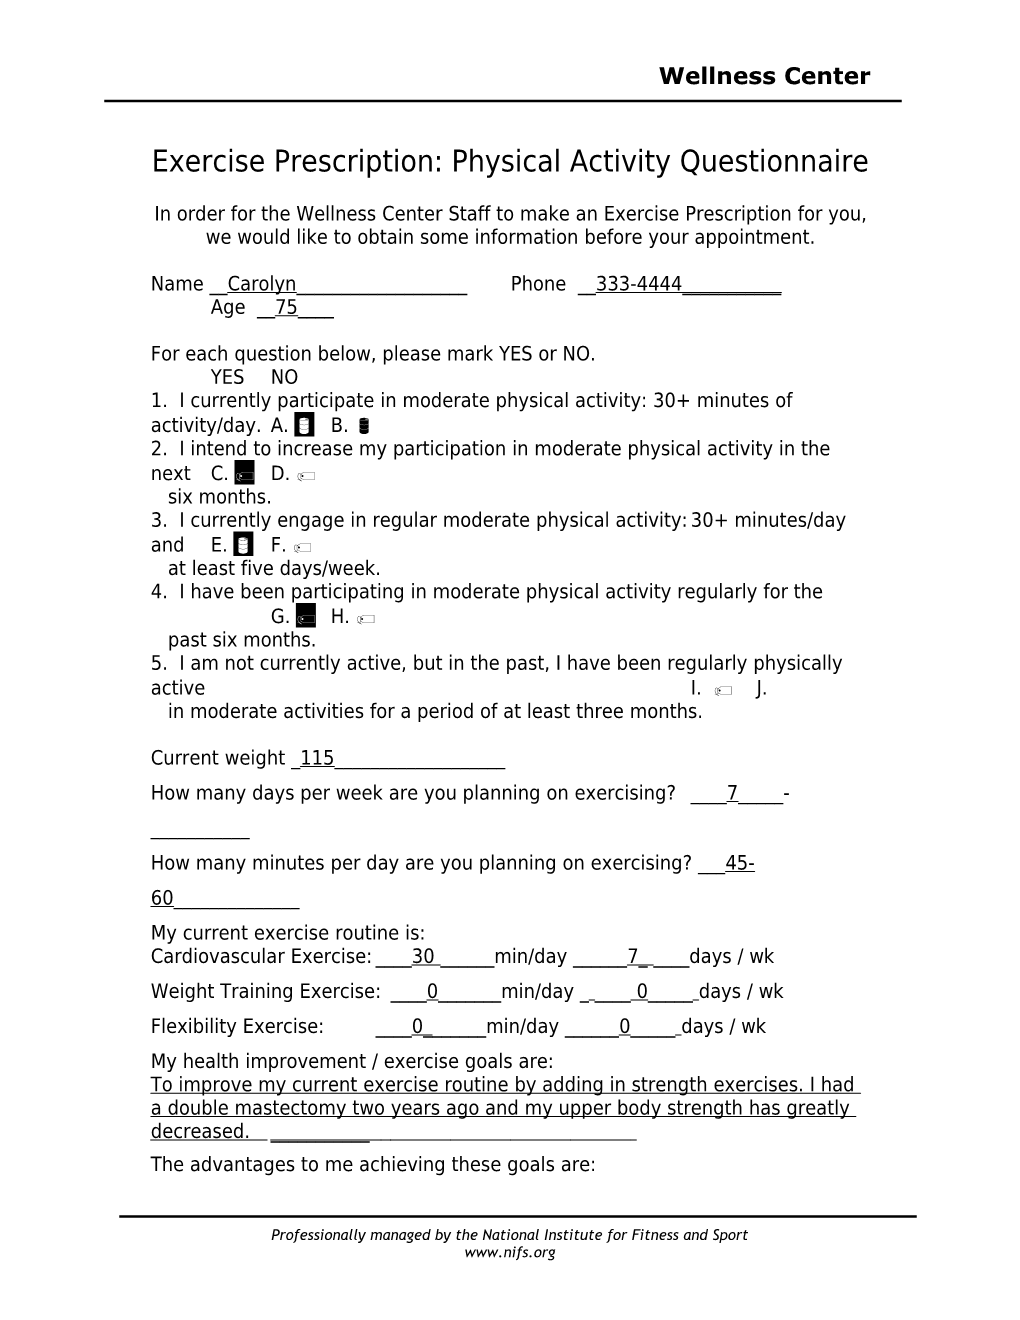 Exercise Prescription: Physical Activity Questionnaire